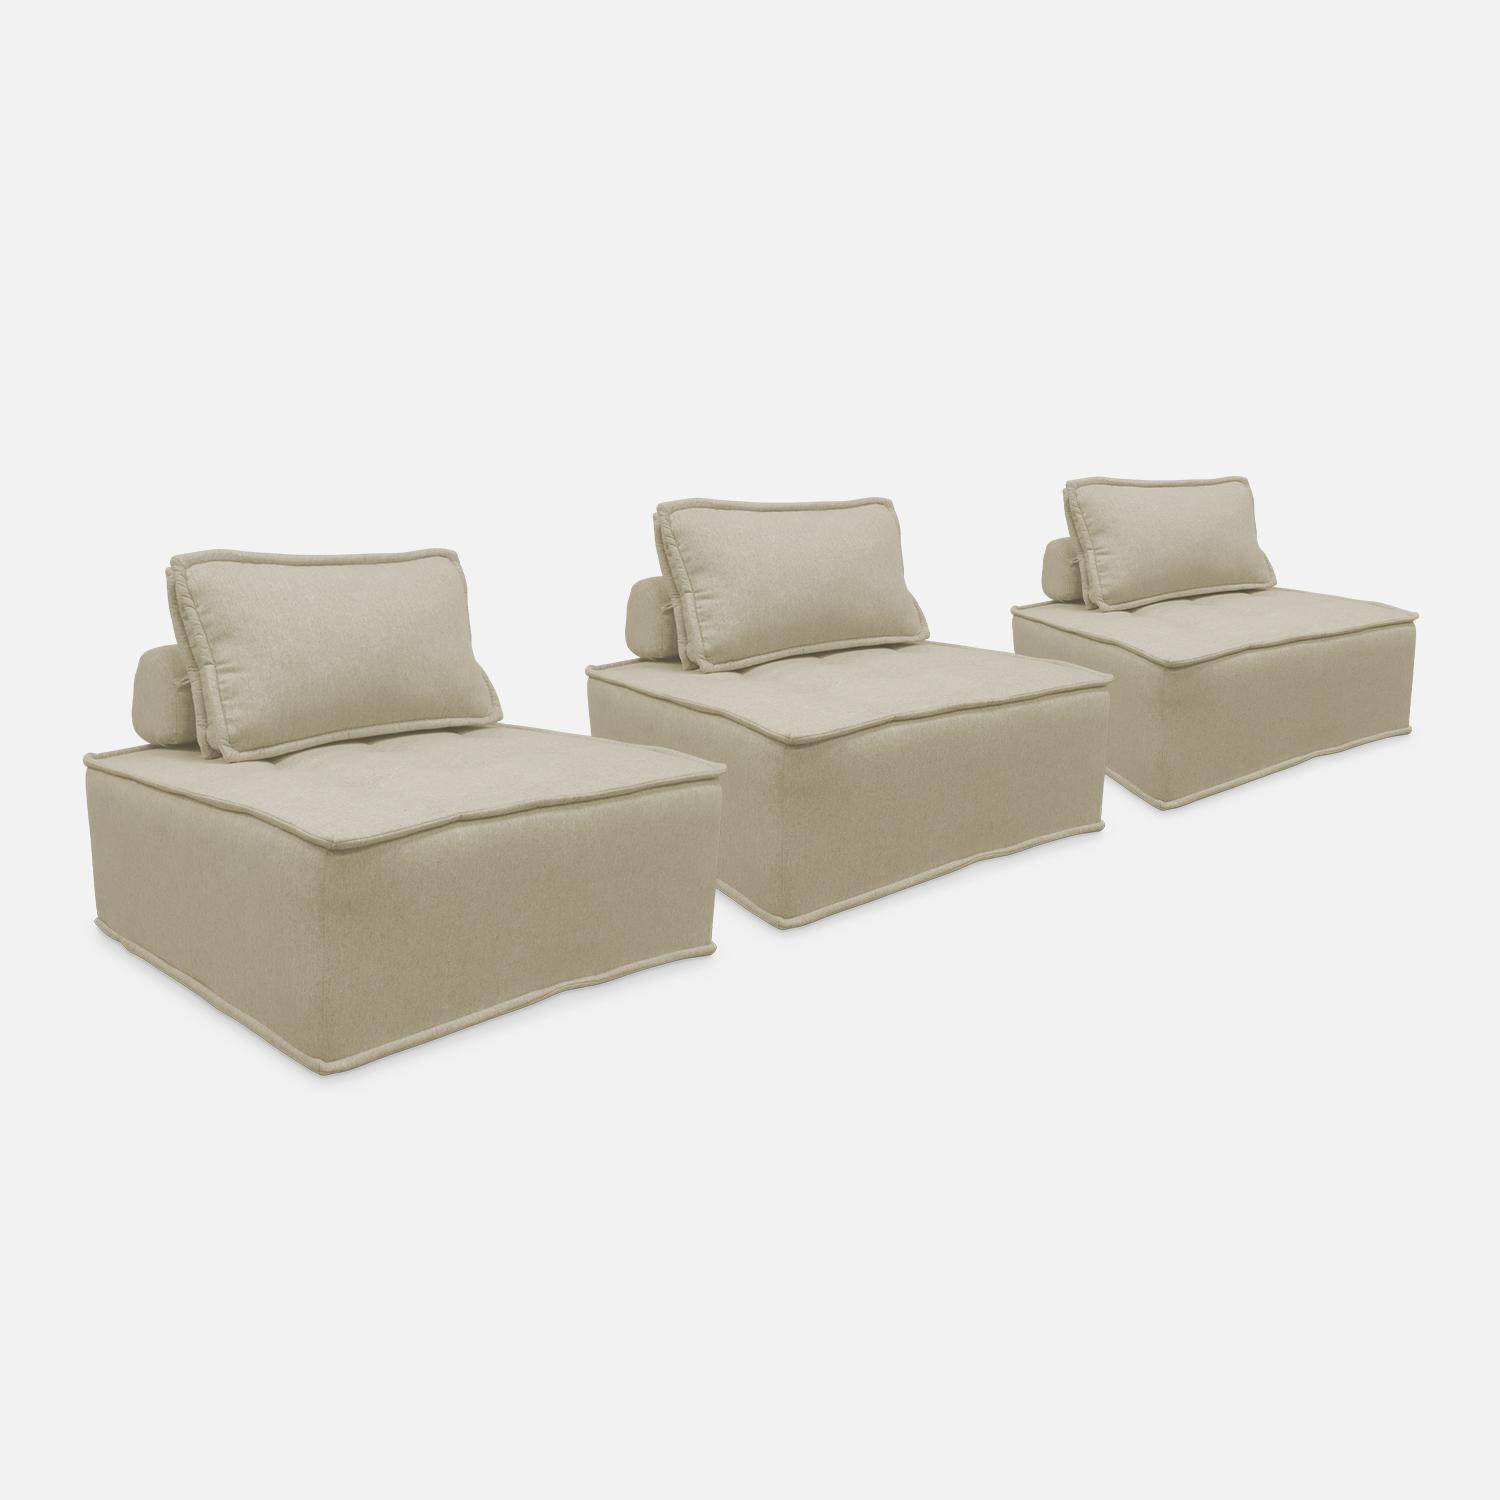 Set van 3 modulaire fauteuils in beige stof met 1 kussen Photo5